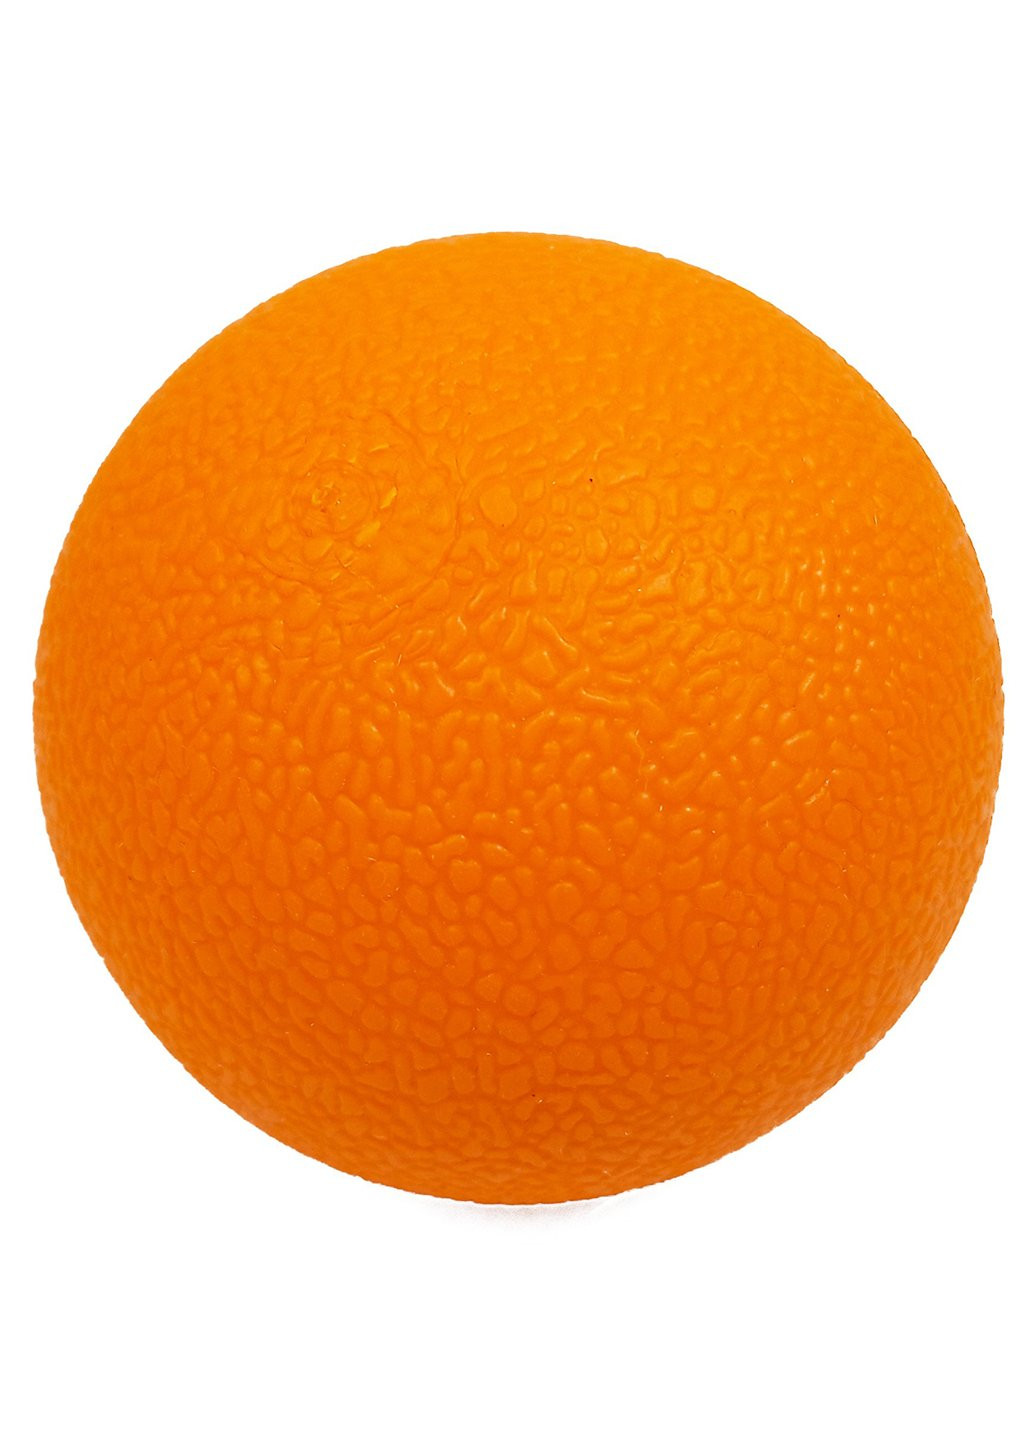 Масажний набір Extra помаранчевий валик (ролер), м'ячики (подвійний і одинарний TRP для міофасціального релізу і самомасажу) EasyFit (242659656)